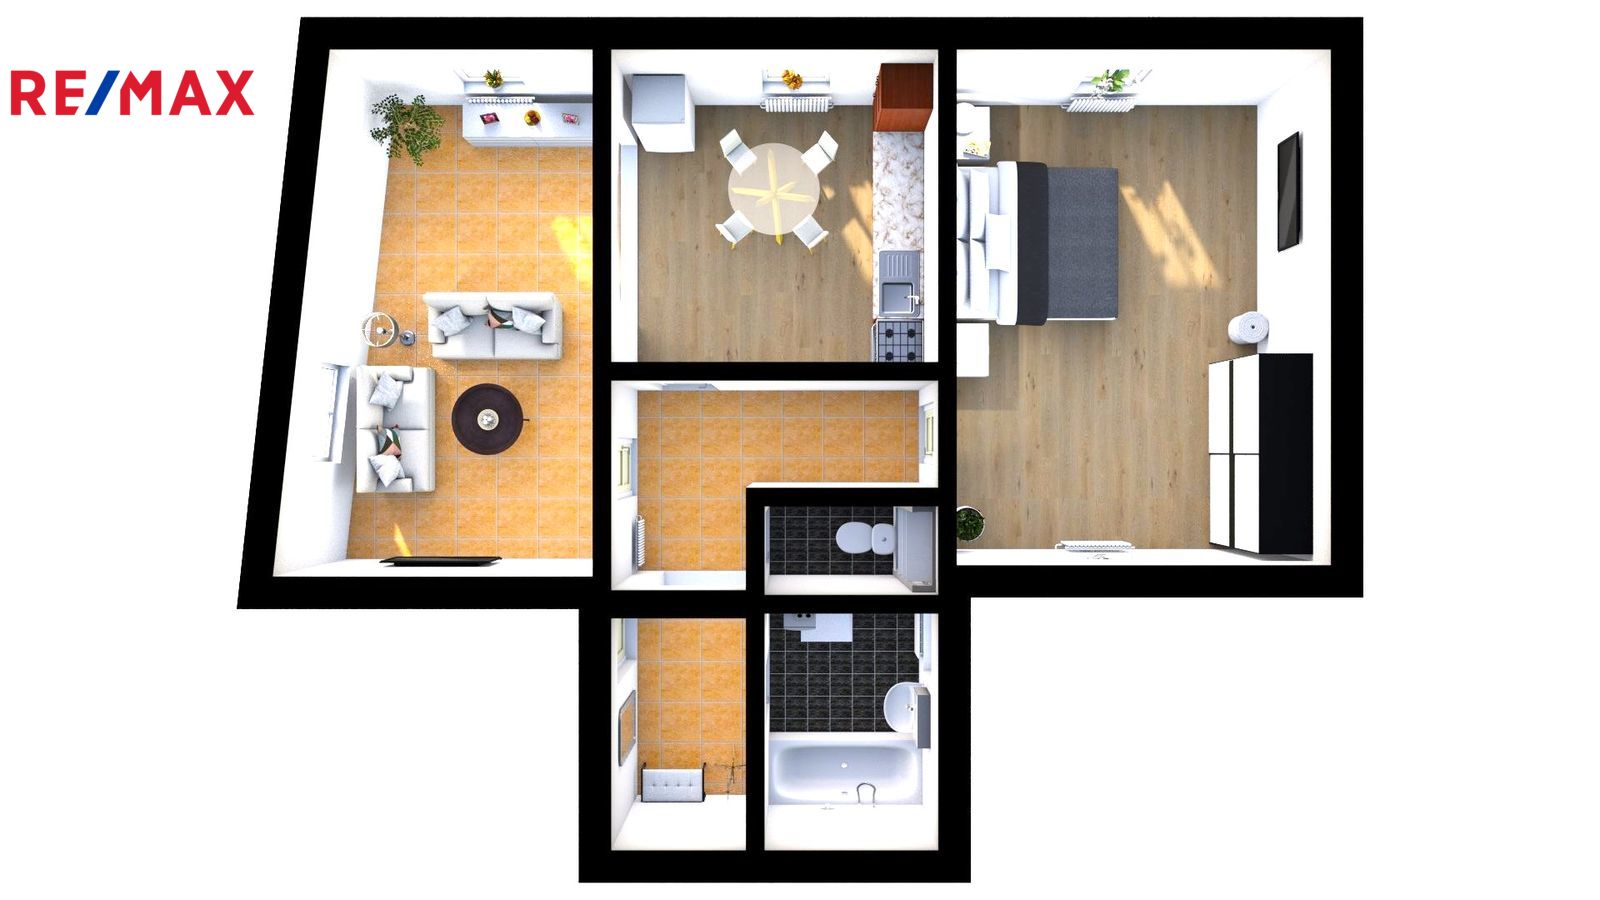 Půdorys bytu - pohled 3D - ilustrační vybavení byt